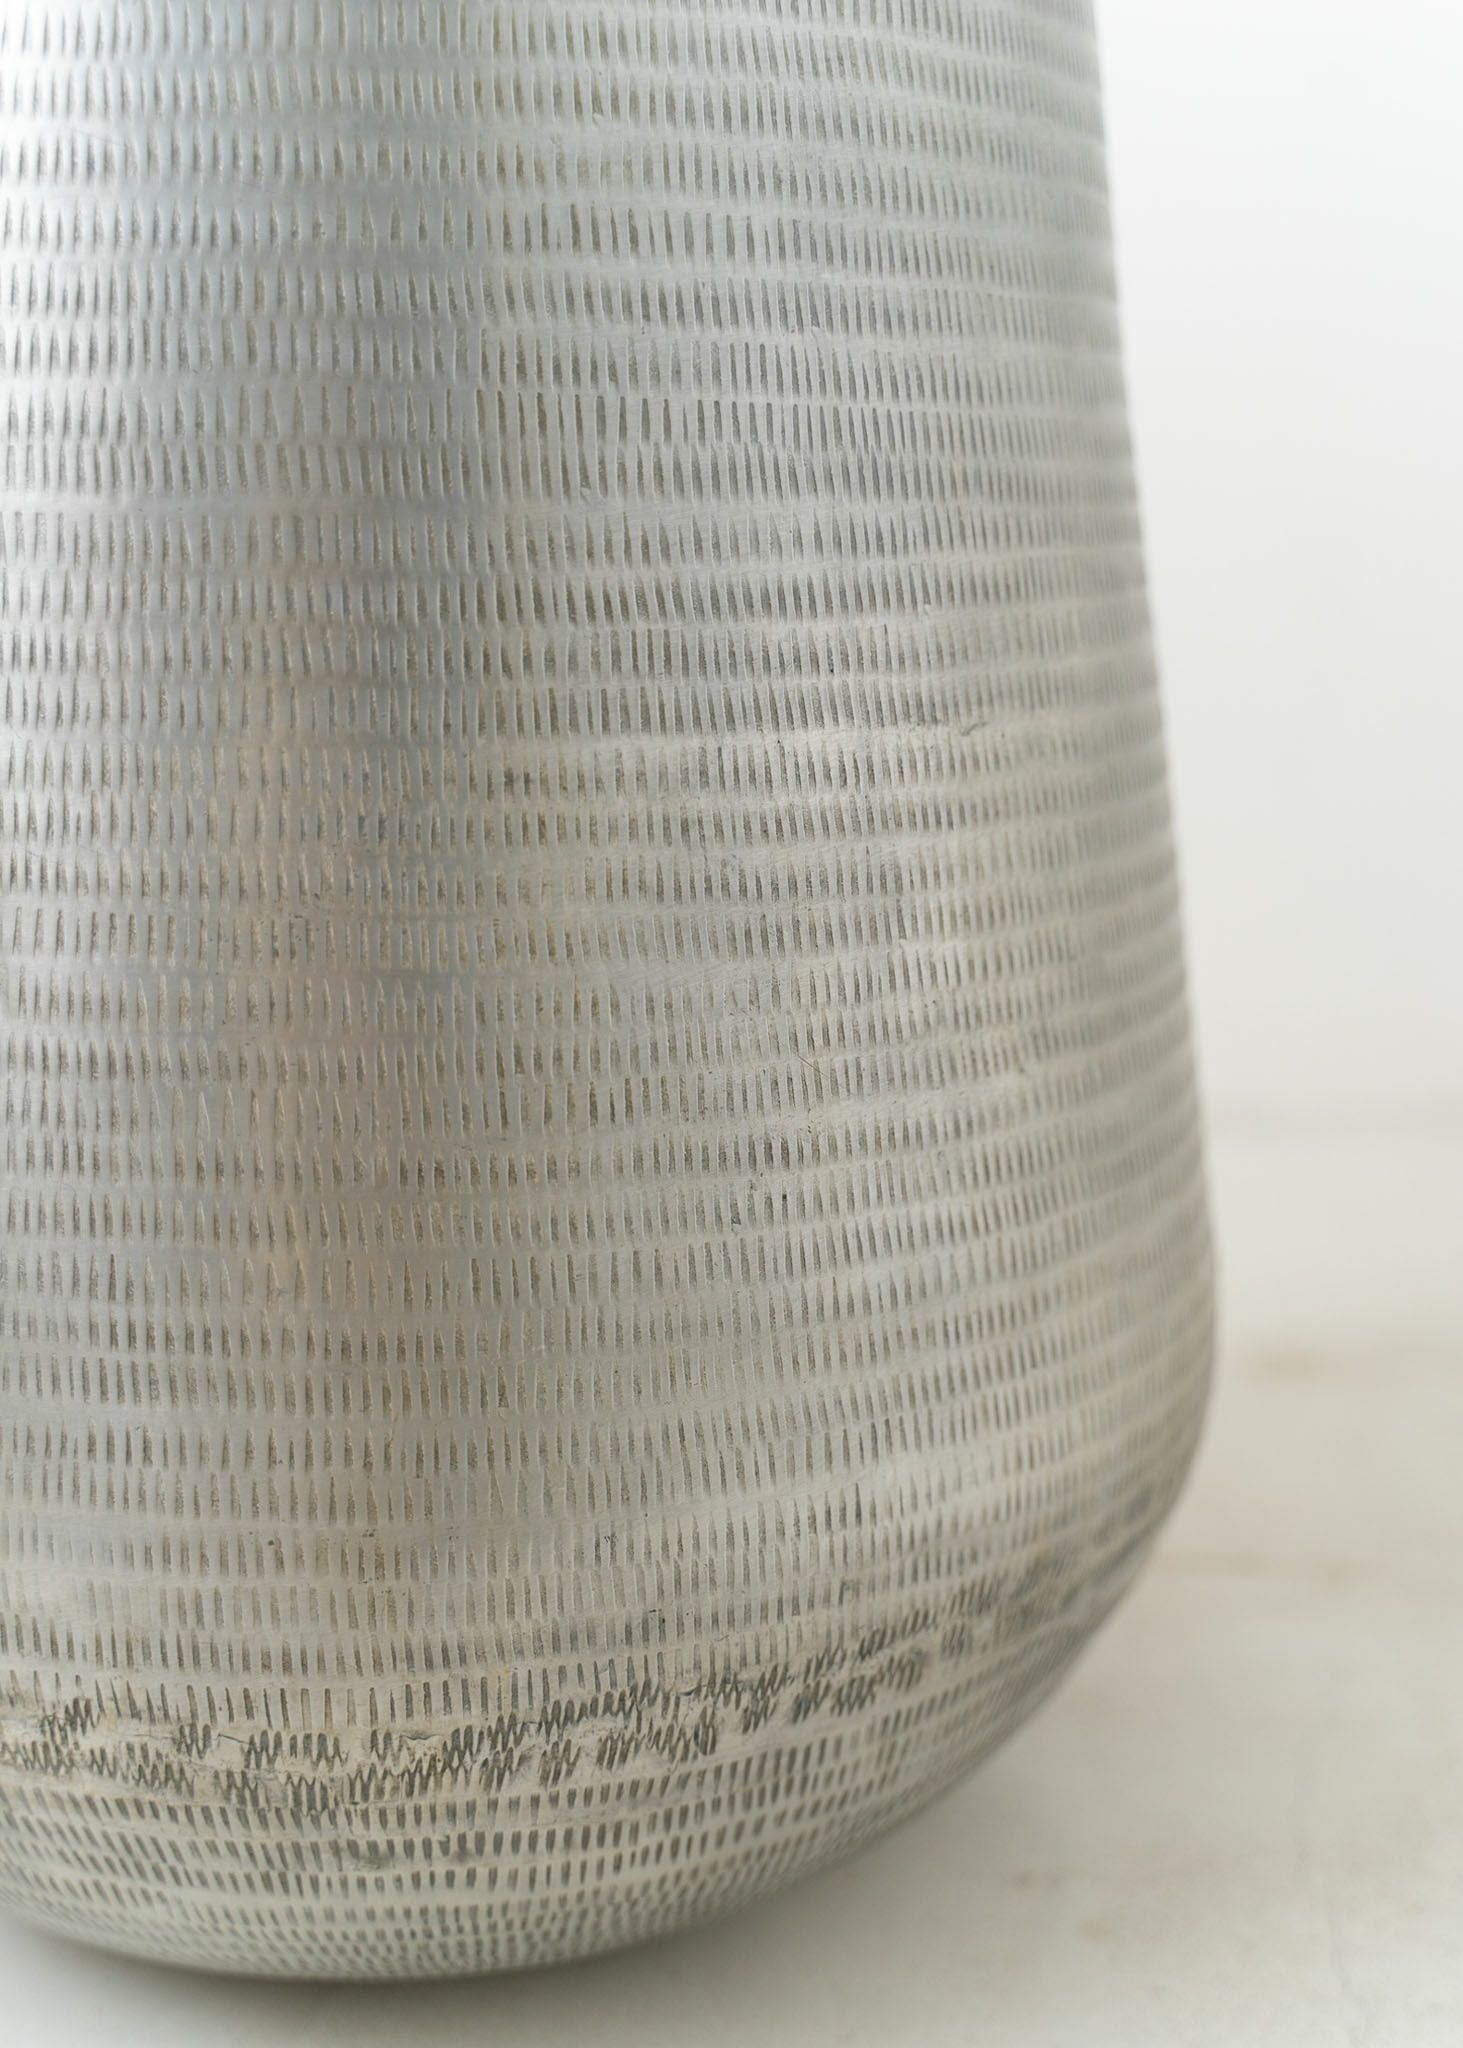 Artistic Aluminium Vase Rice Hammer